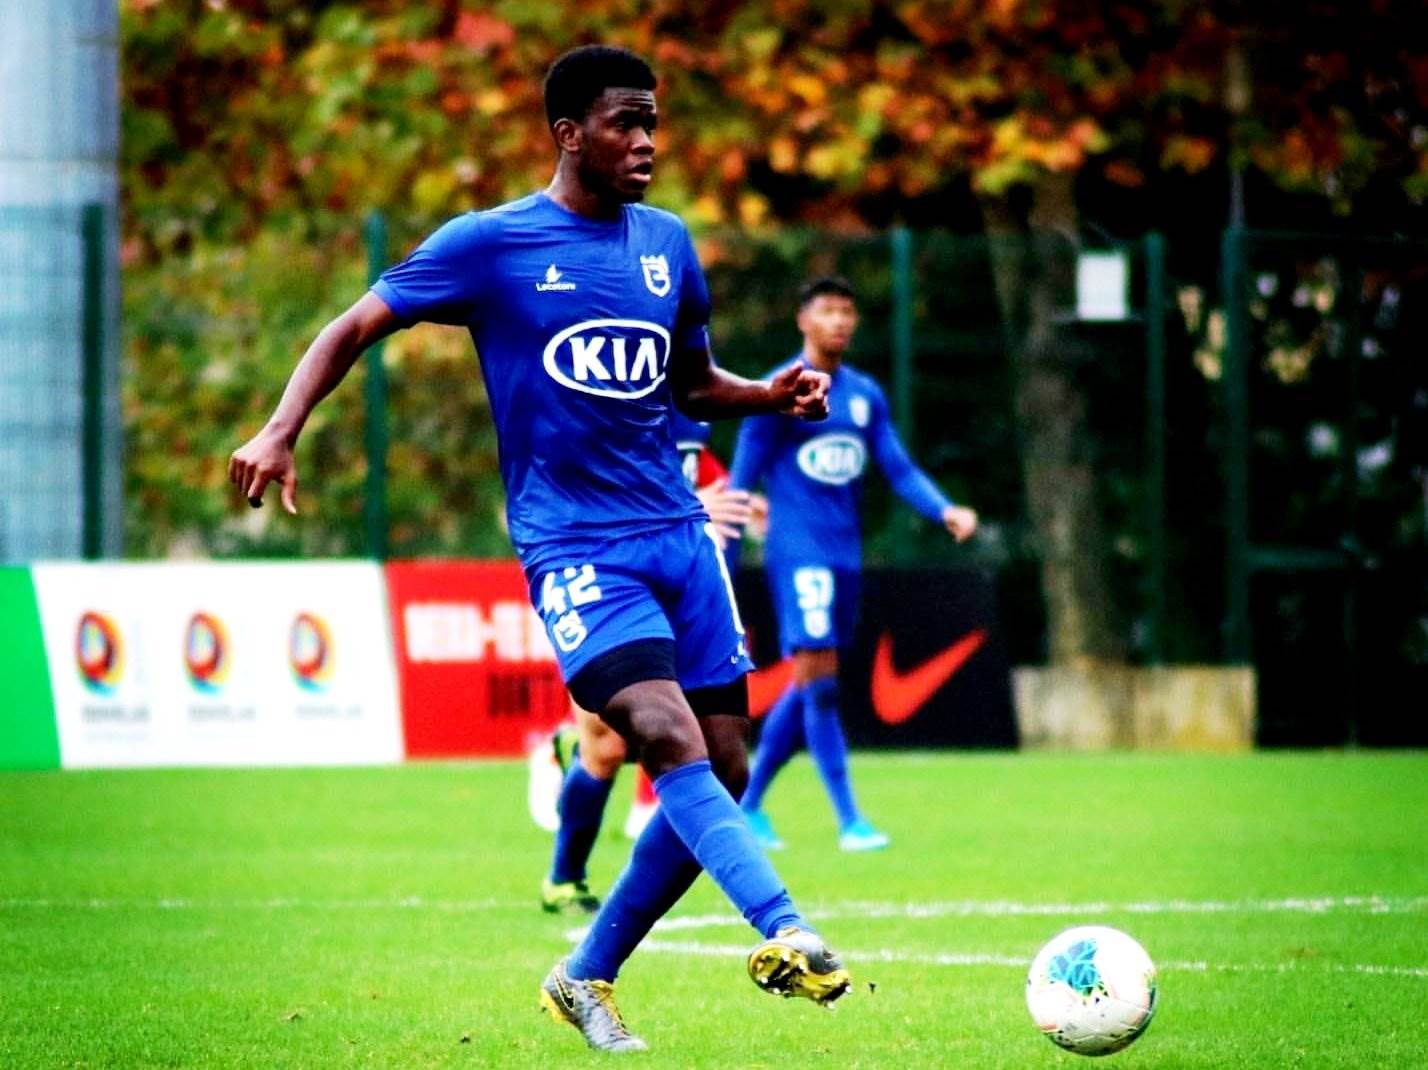 Sphephelo Sithole (21) - Belenenses midfielder and